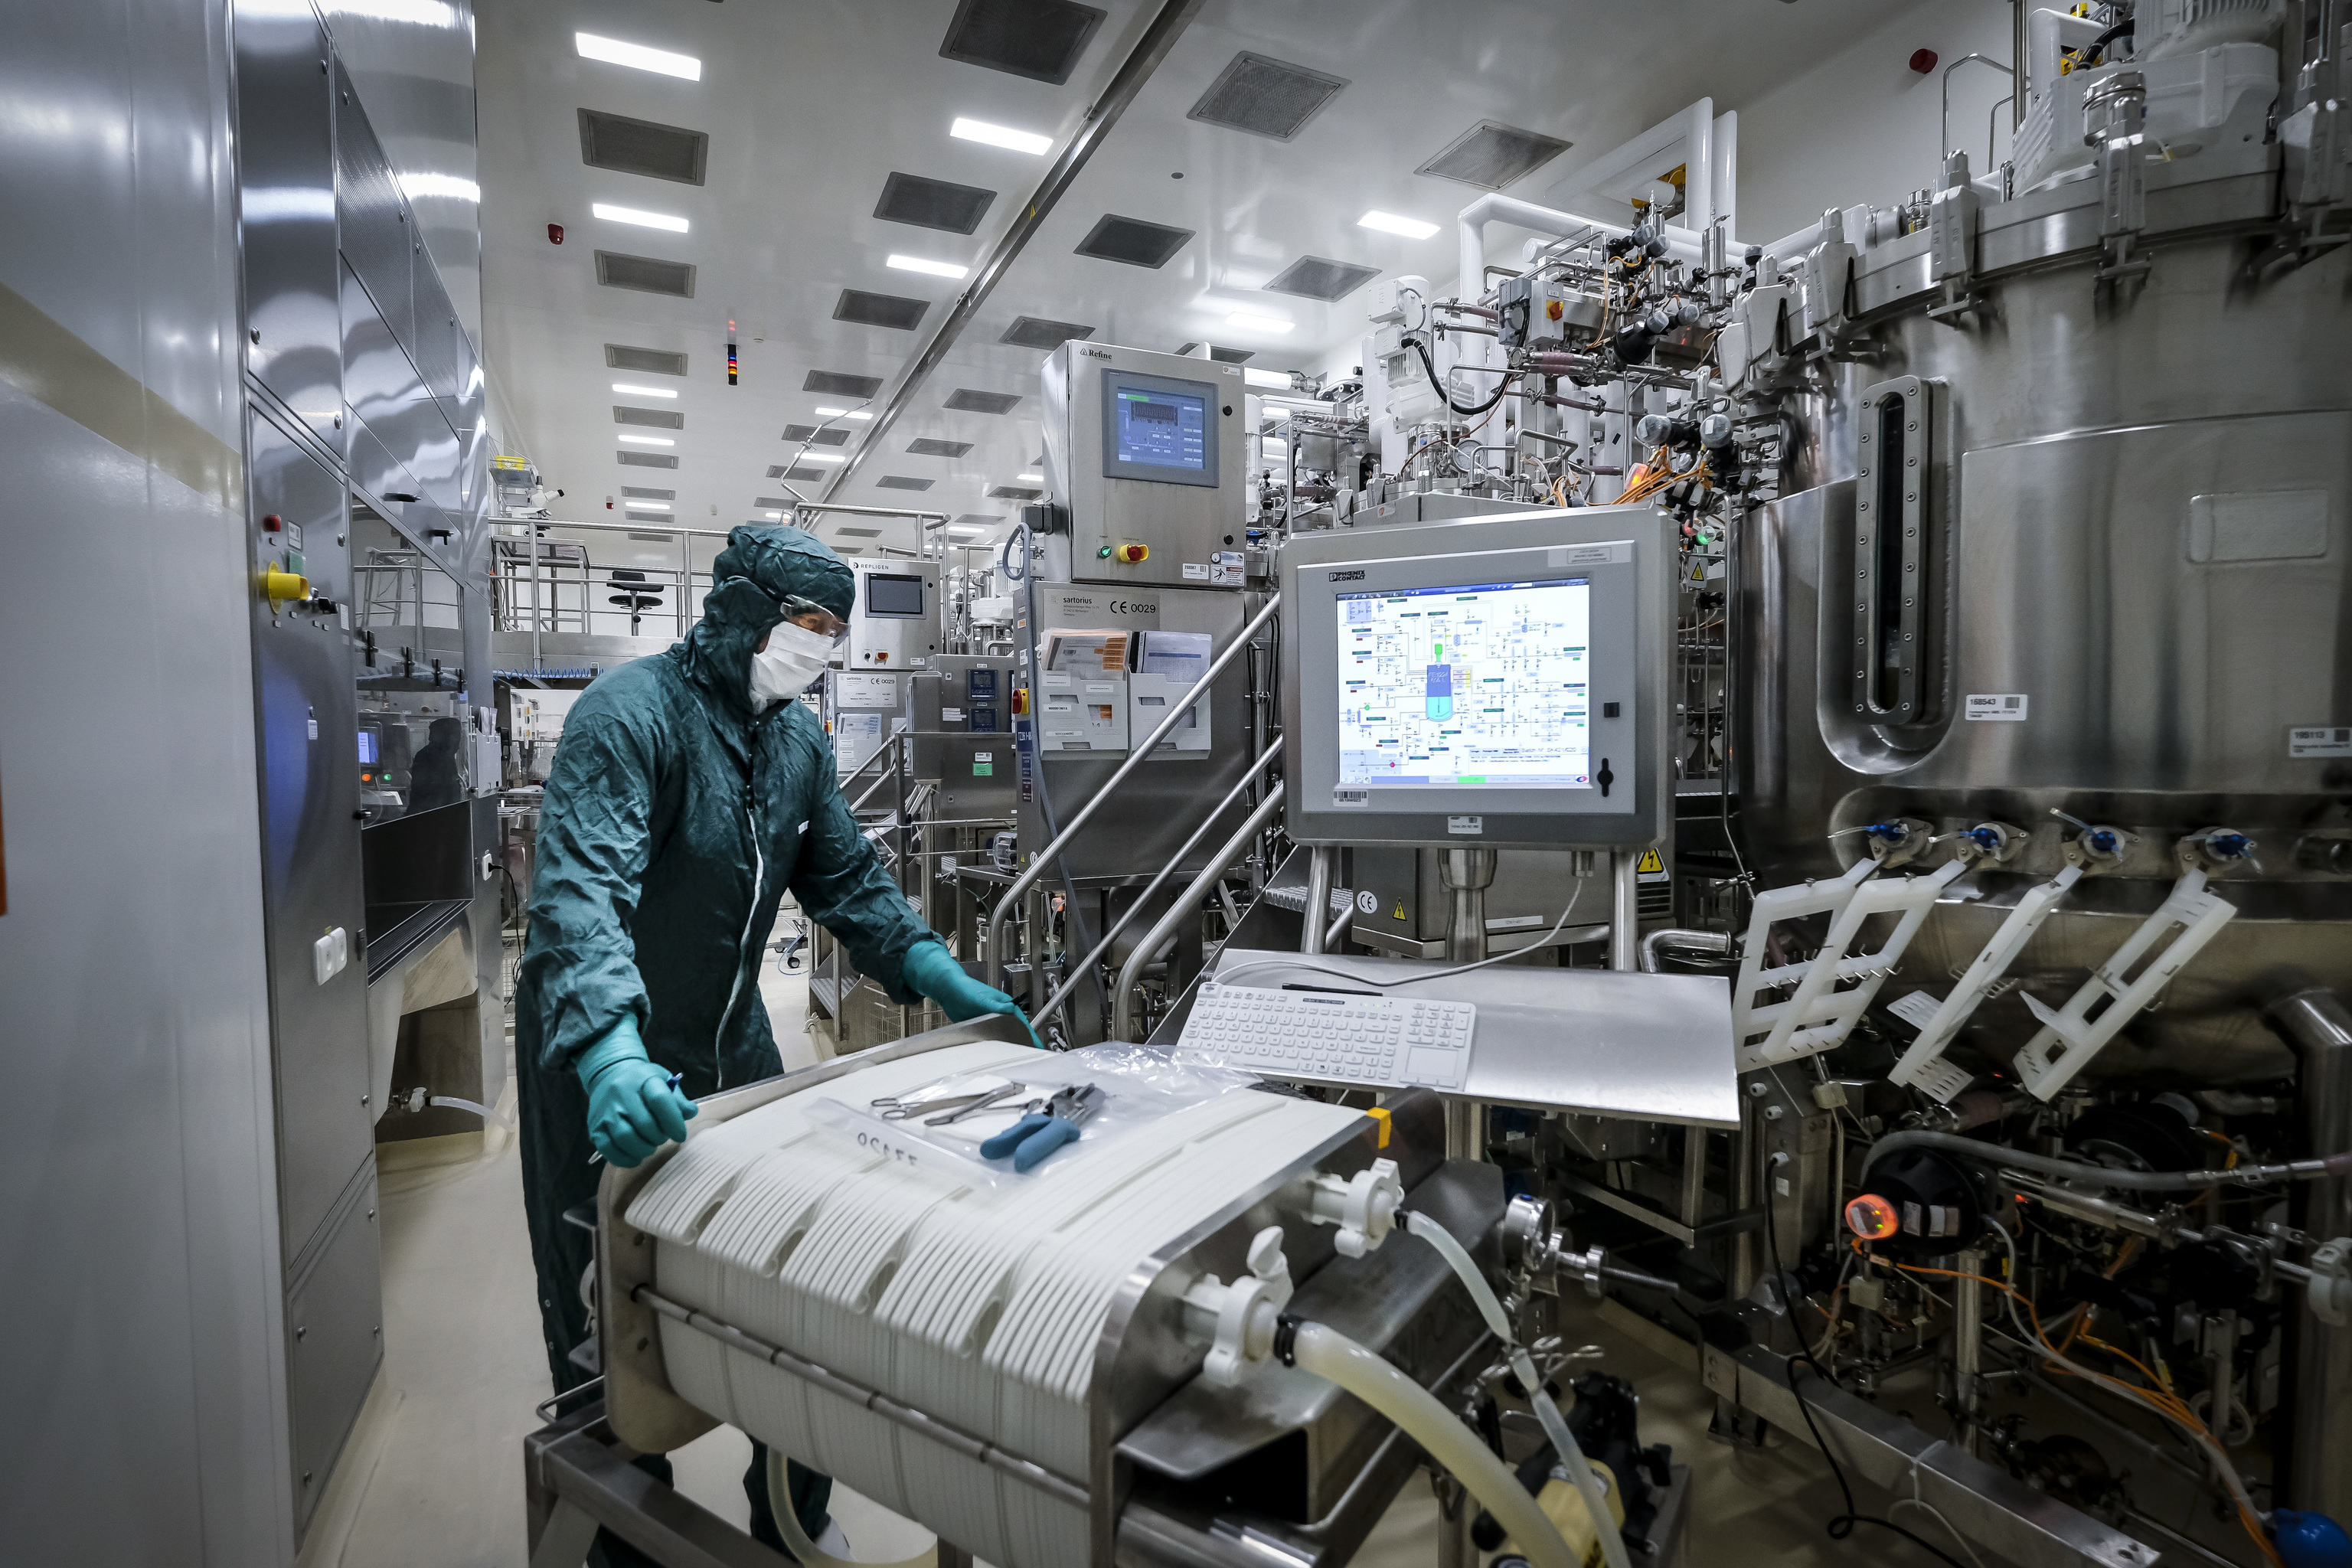 Un trabajador
realiza un test
en la sala
del tanque del
compuesto
antignico